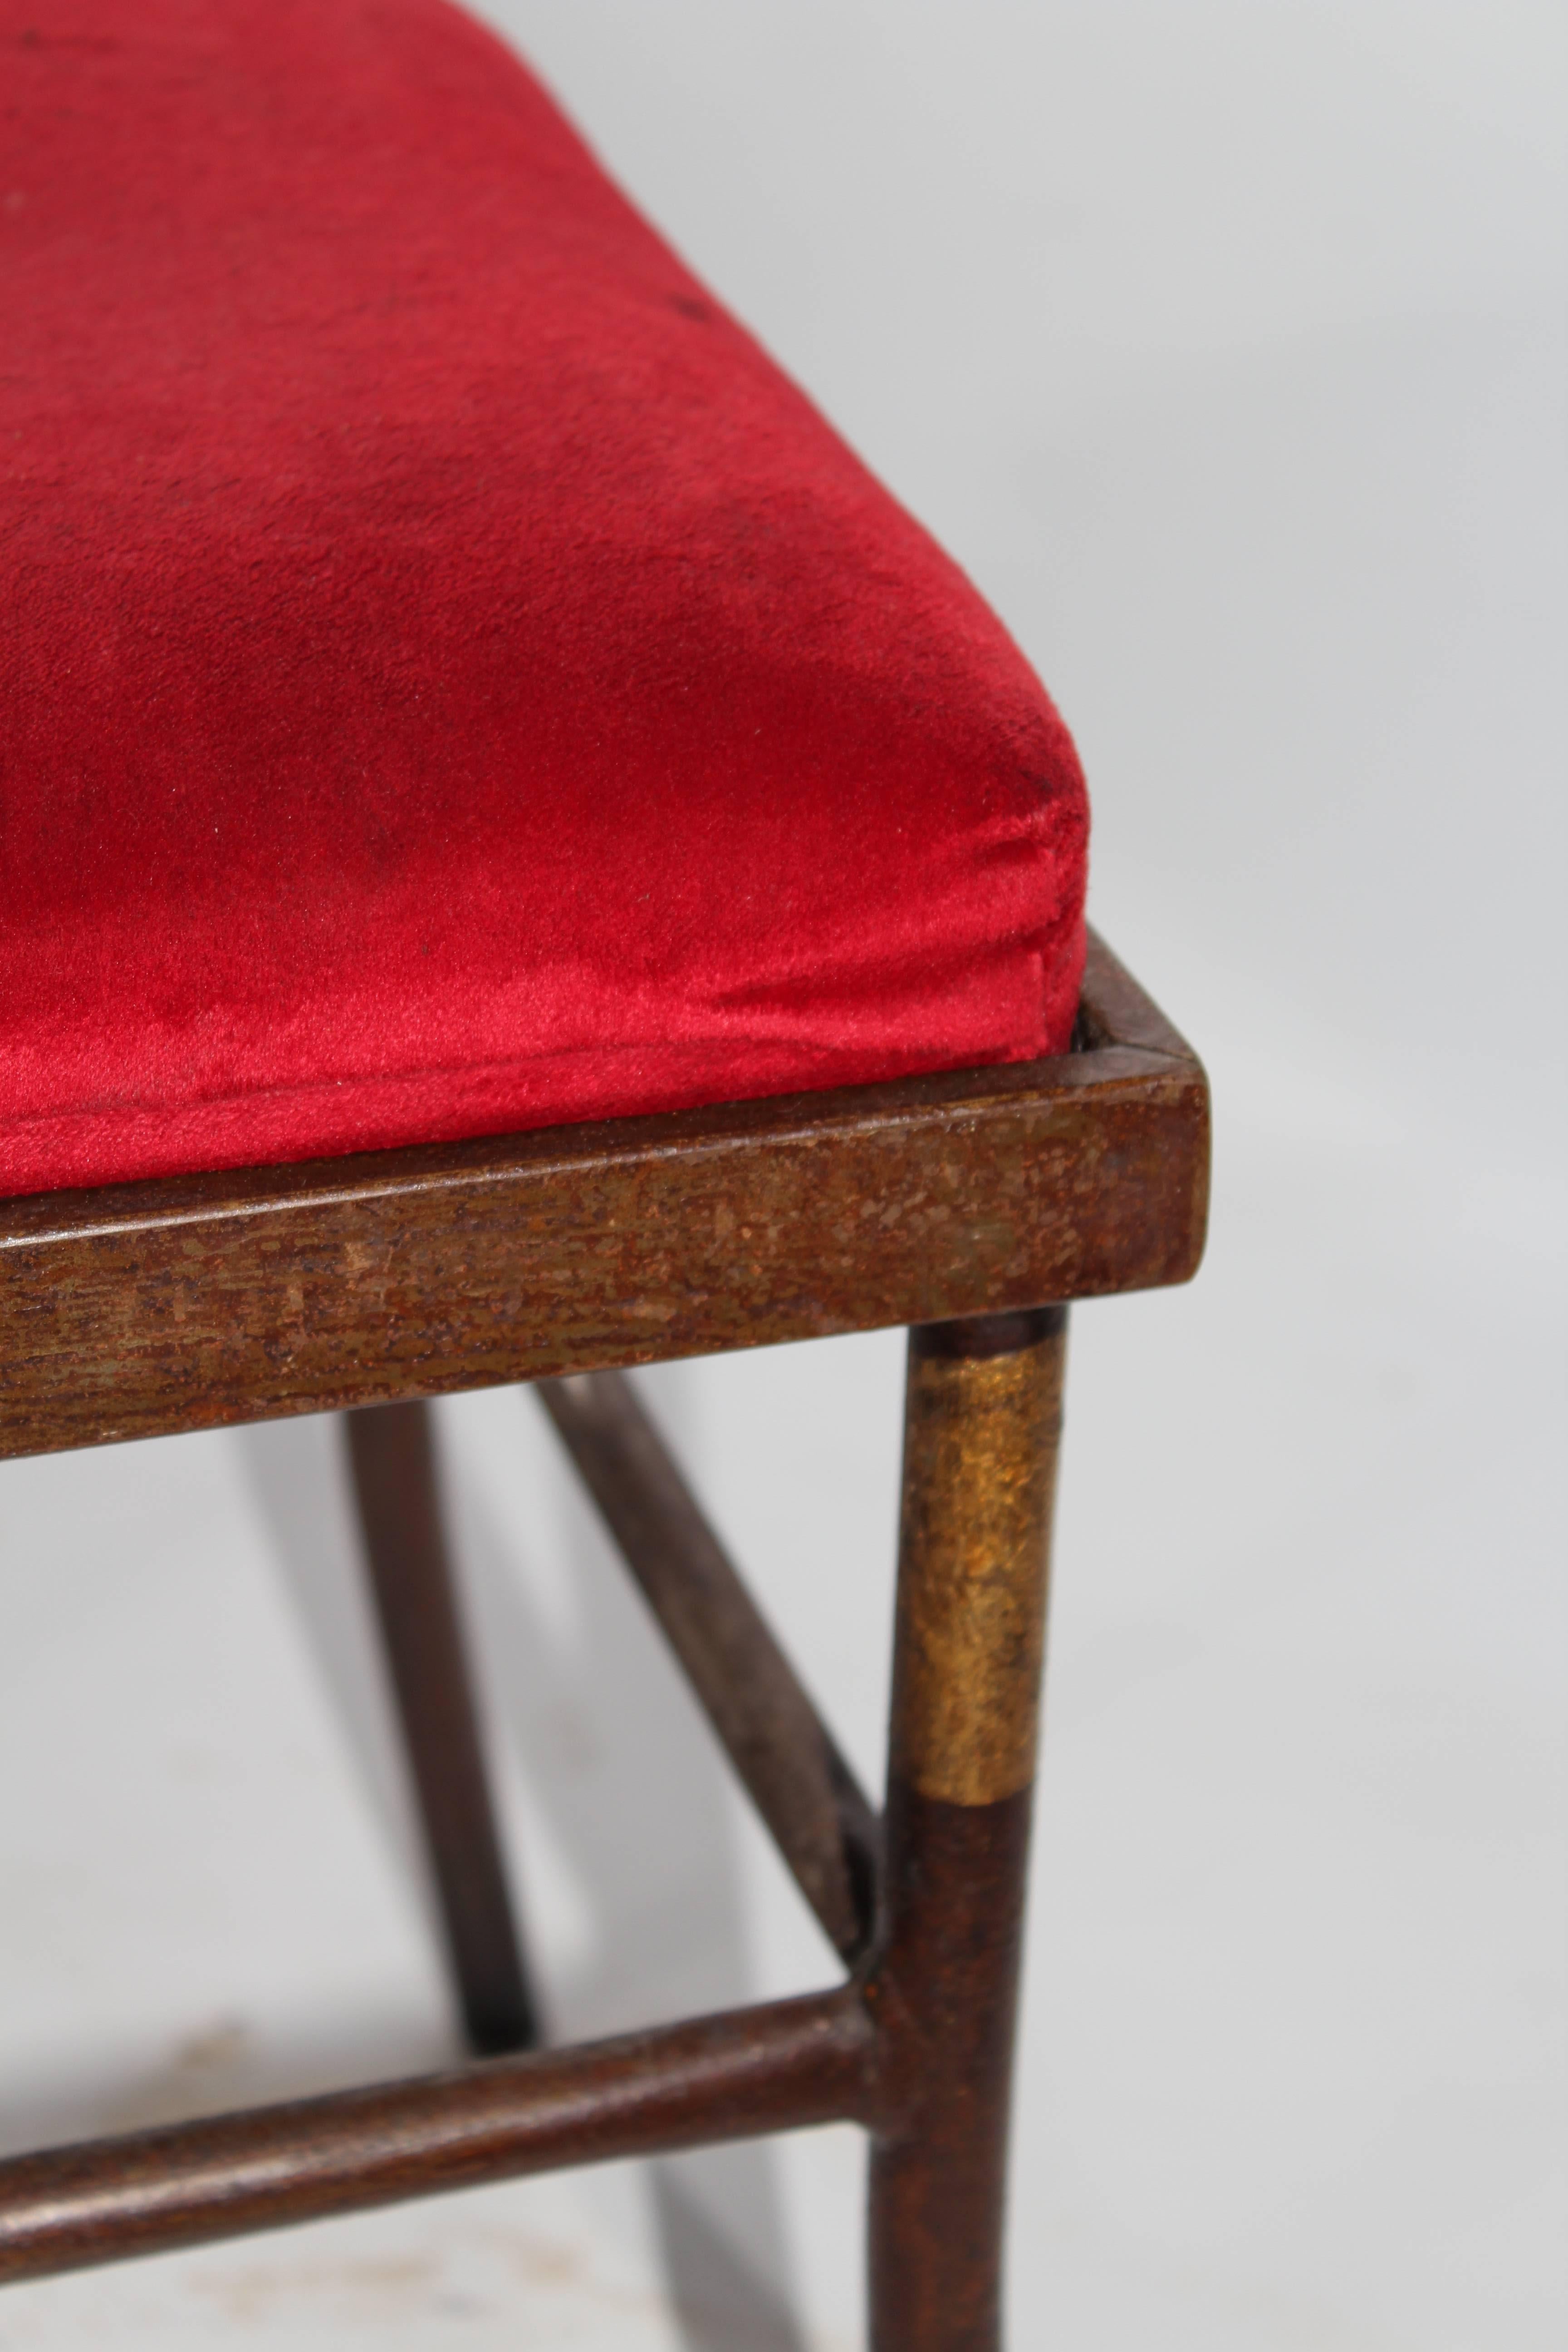 Set of four 1990s iron stools upholstered in red velvet.

